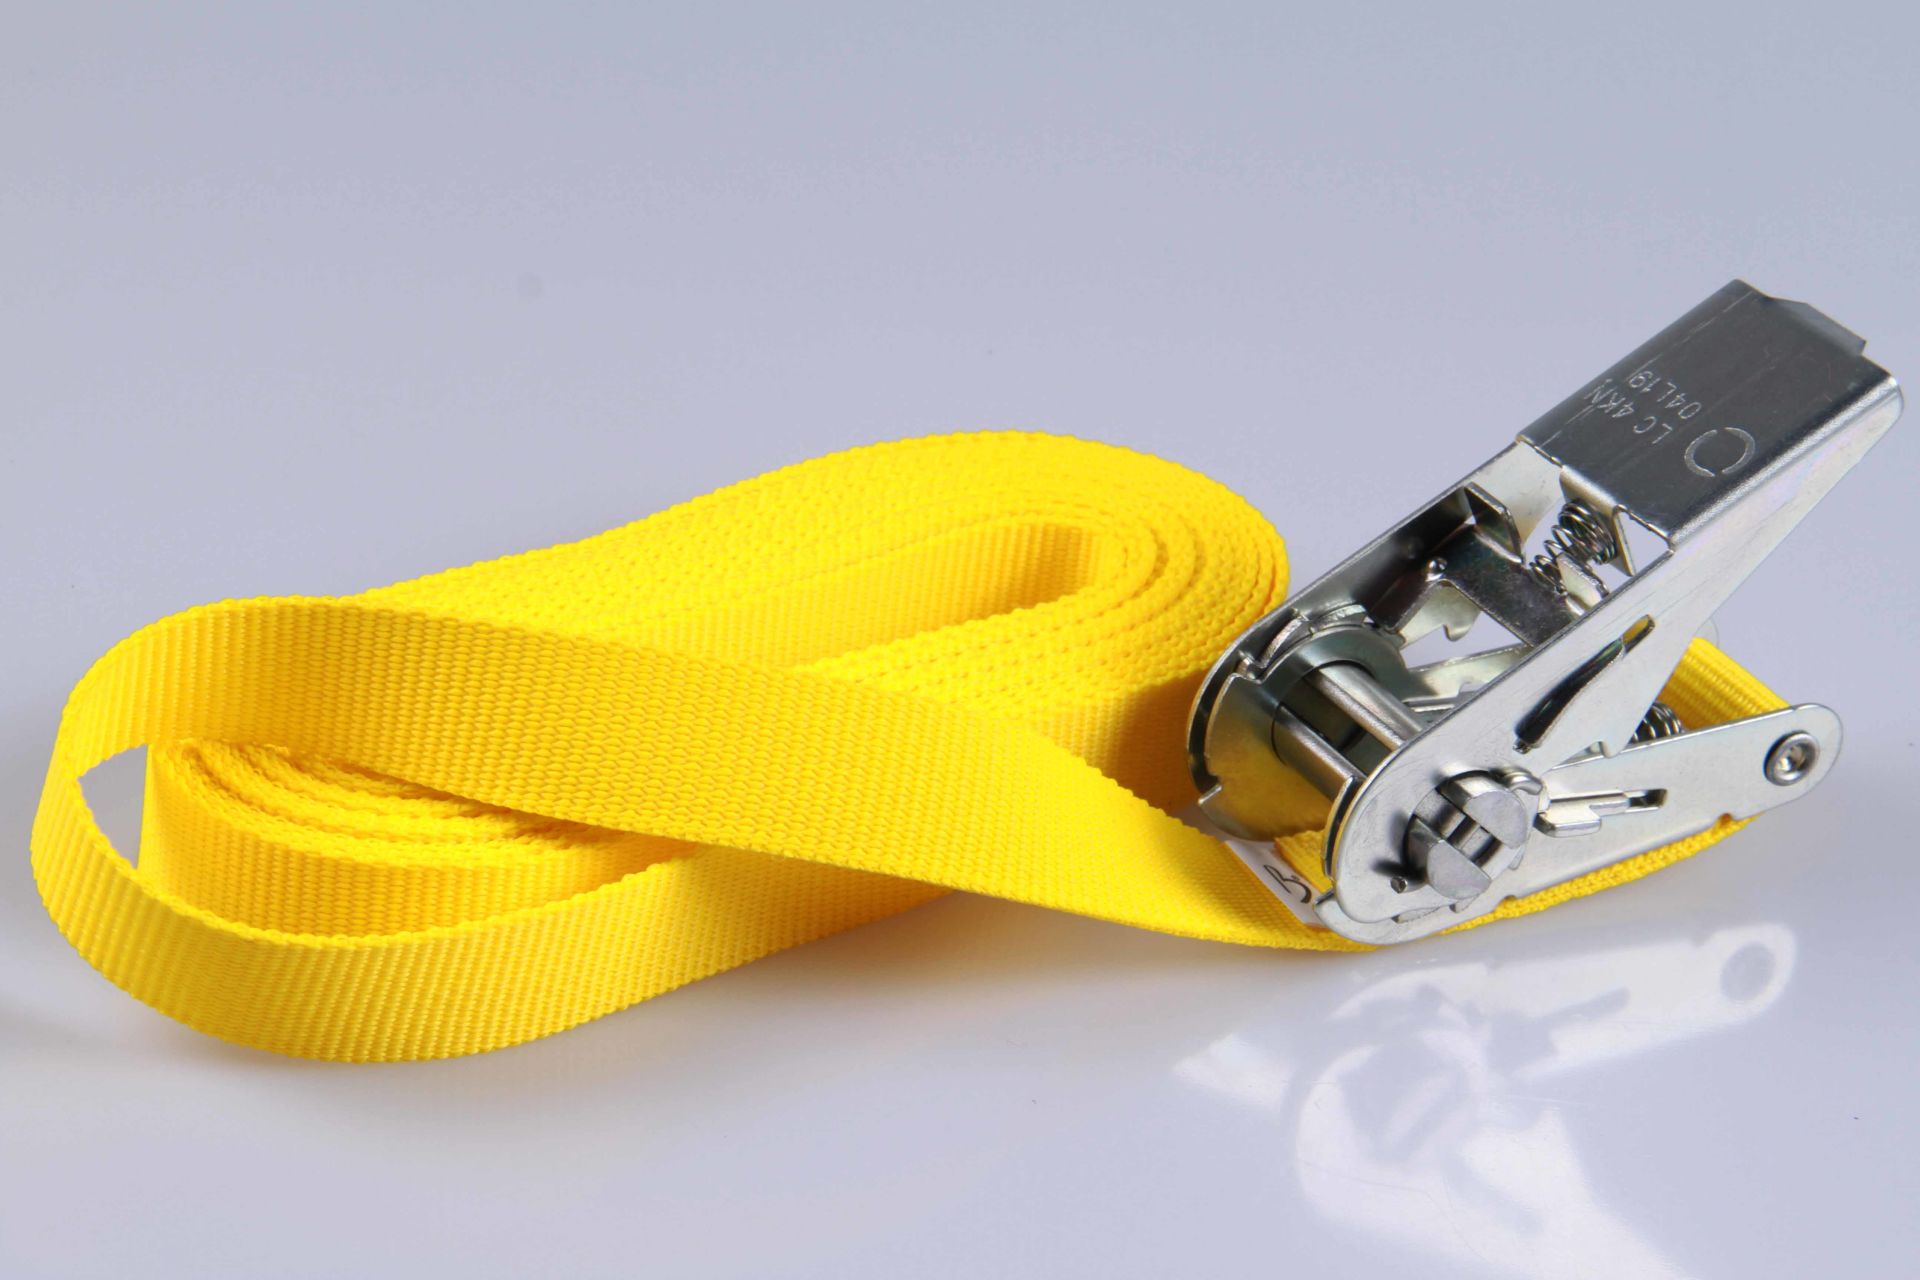 PP-Ratschengurte | 2-er SET | Transportsicherung | 25 mm breit x 4 m lang | Gelb | Silberfarbene oder schwarze Ratsche